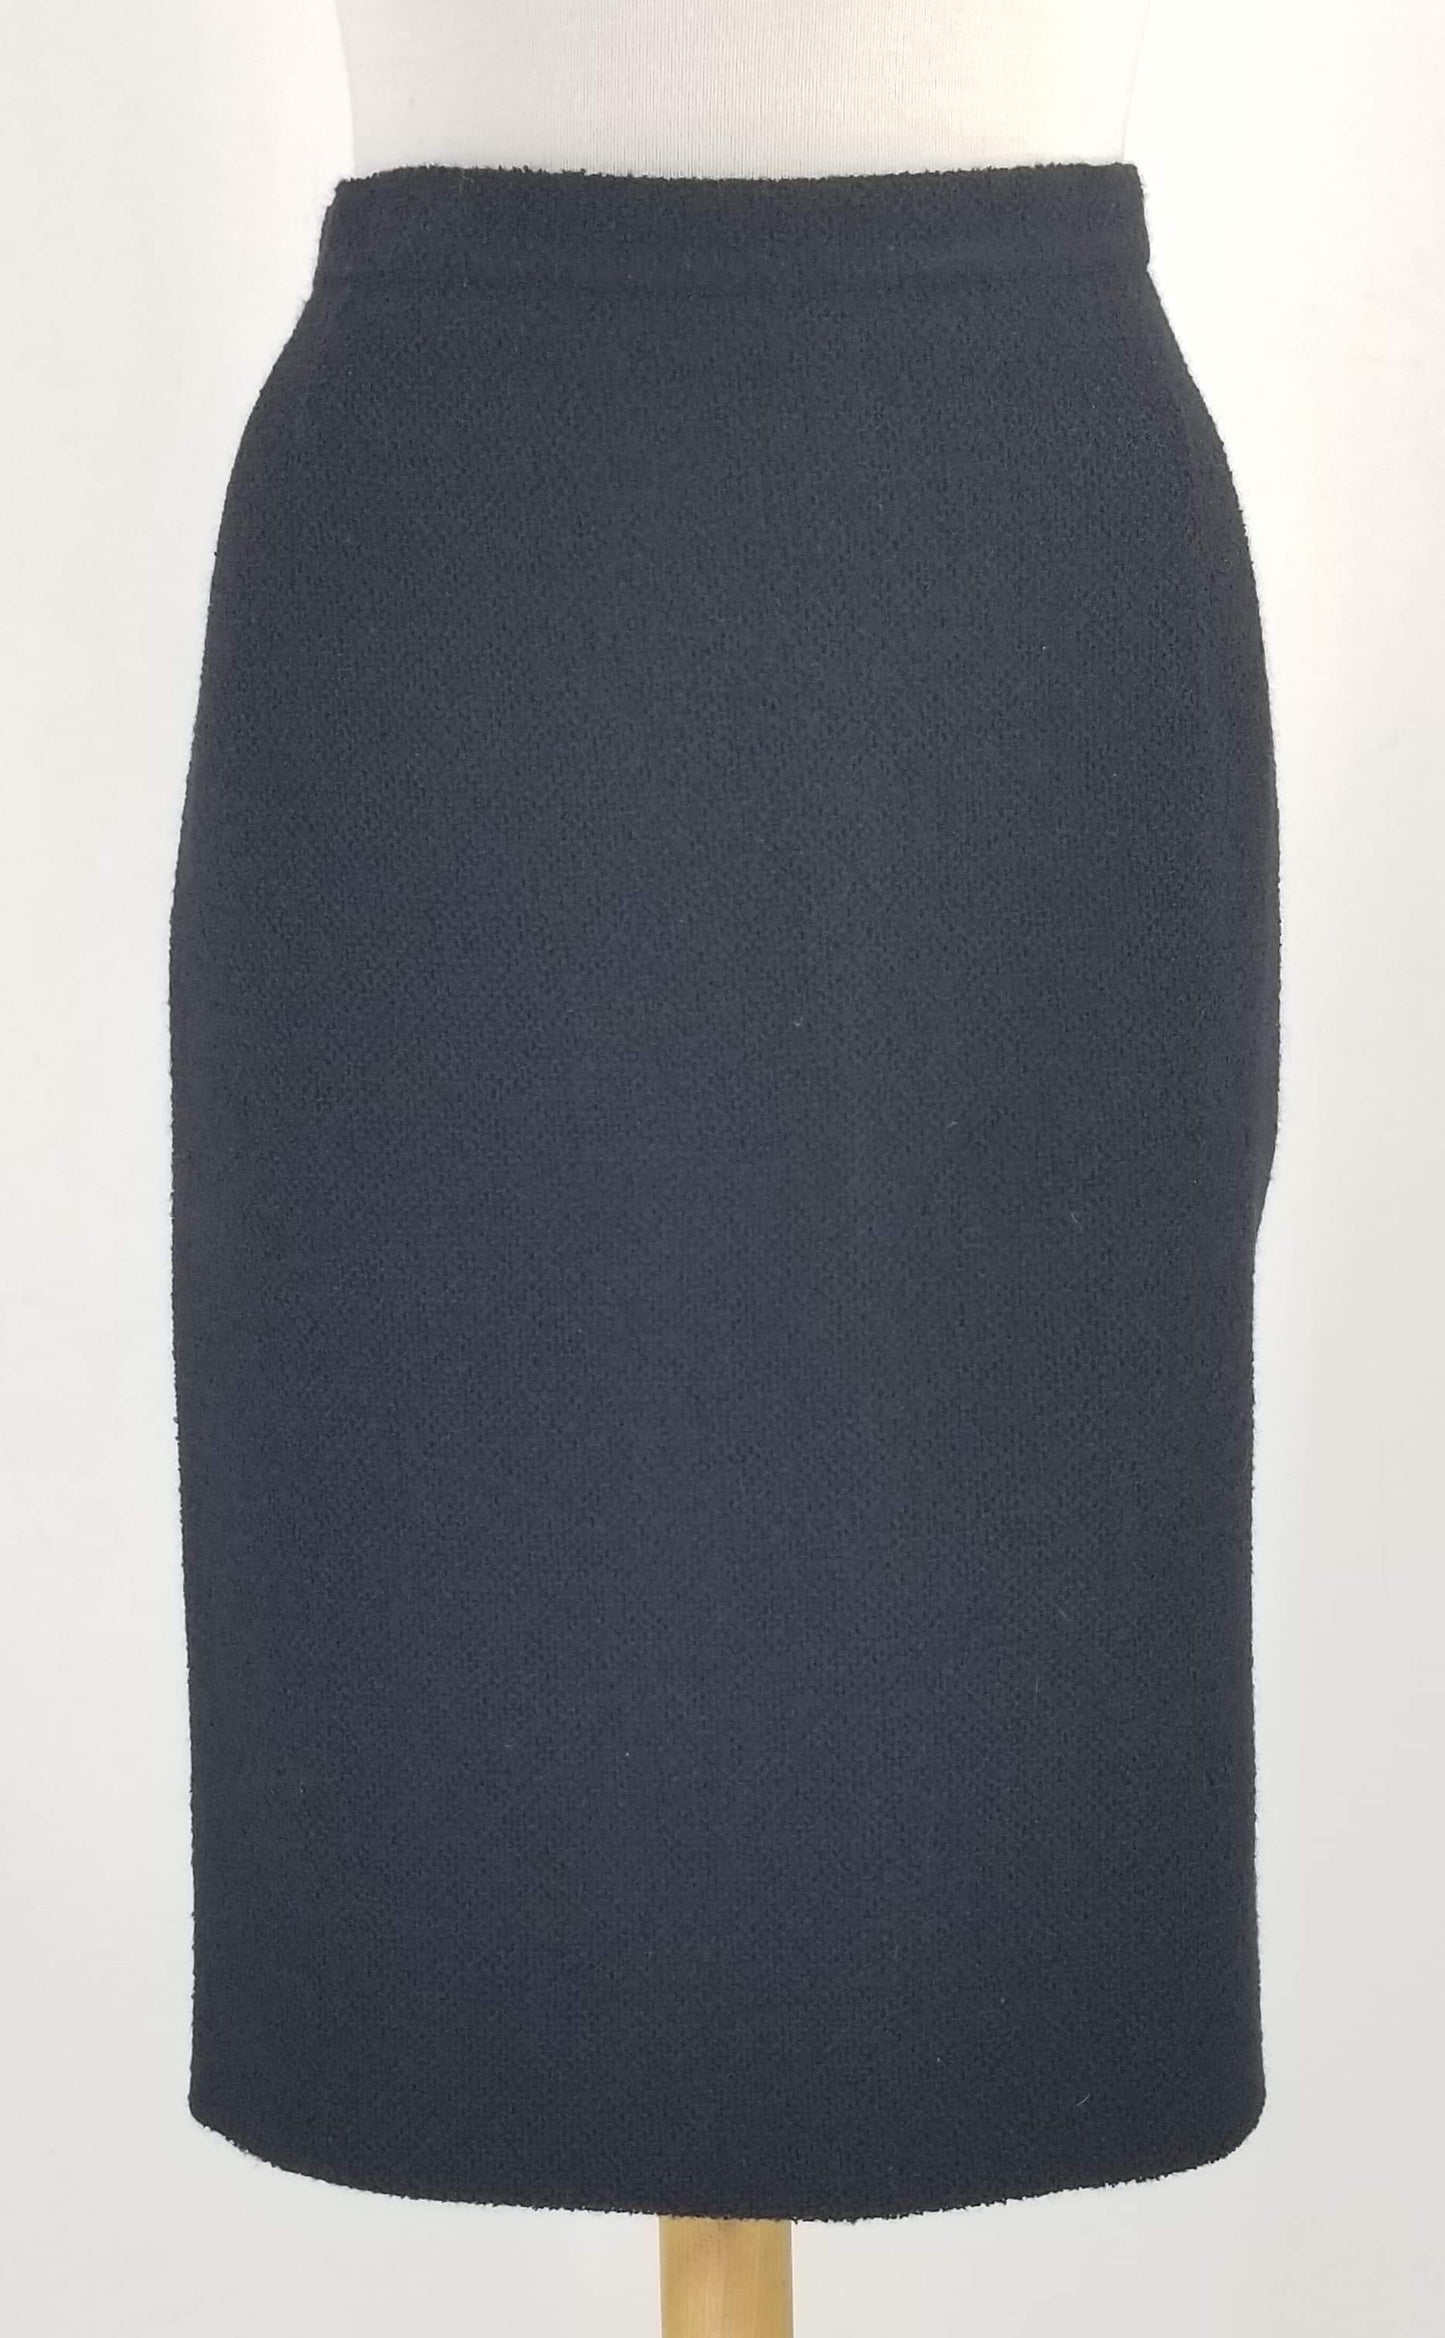 Authentic Rena Lange Black Wool Skirt Suit Sz 14